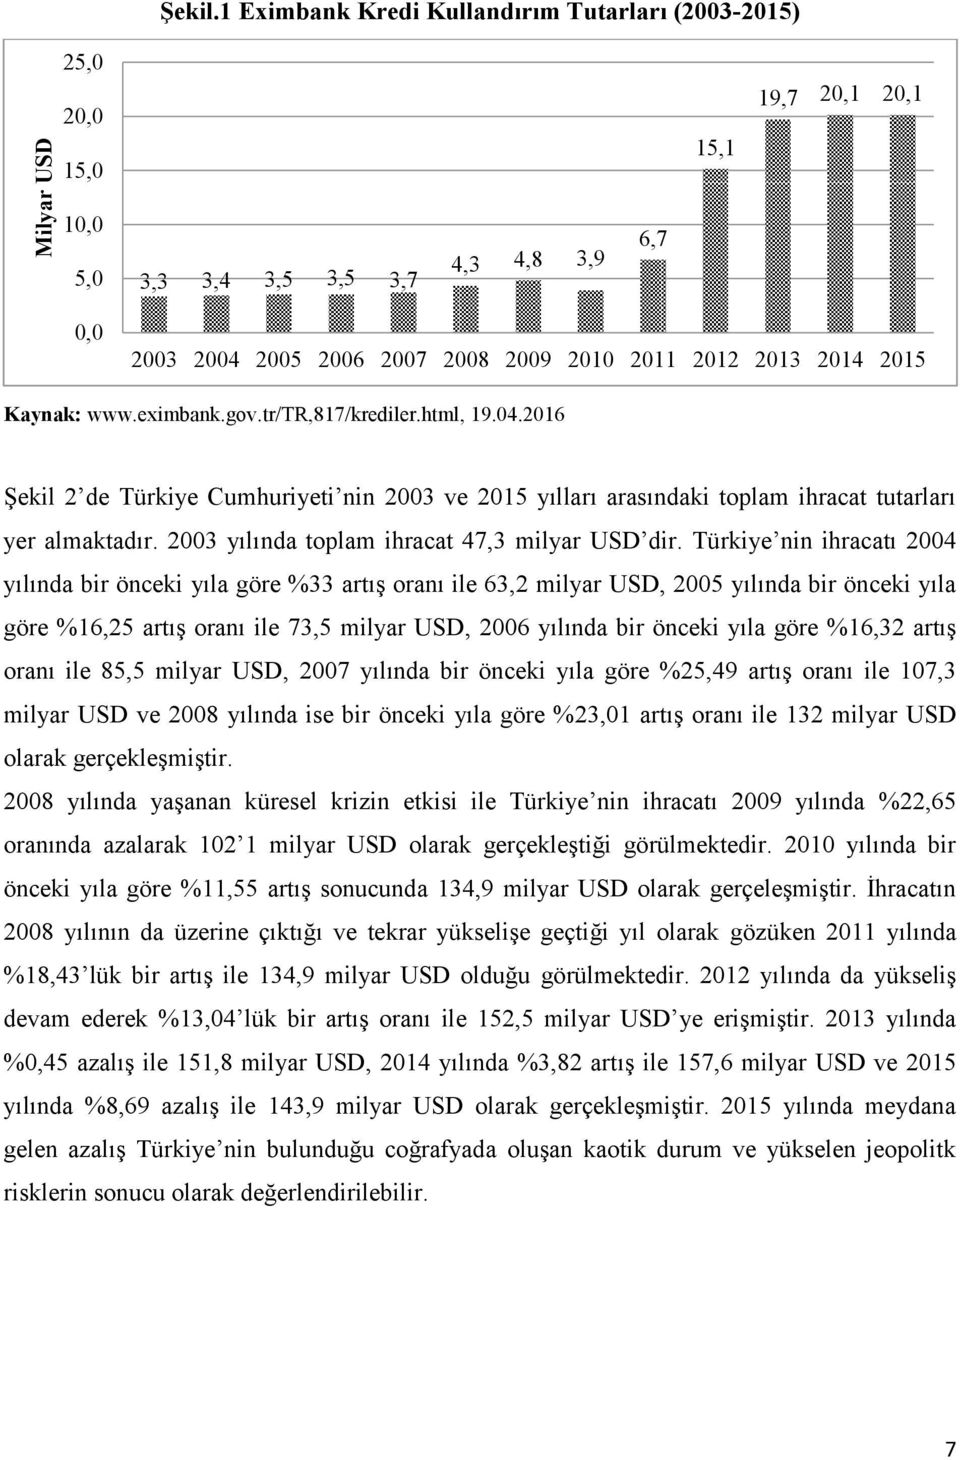 Kaynak: www.eximbank.gov.tr/tr,817/krediler.html, 19.04.2016 Şekil 2 de Türkiye Cumhuriyeti nin 2003 ve 2015 yılları arasındaki toplam ihracat tutarları yer almaktadır.